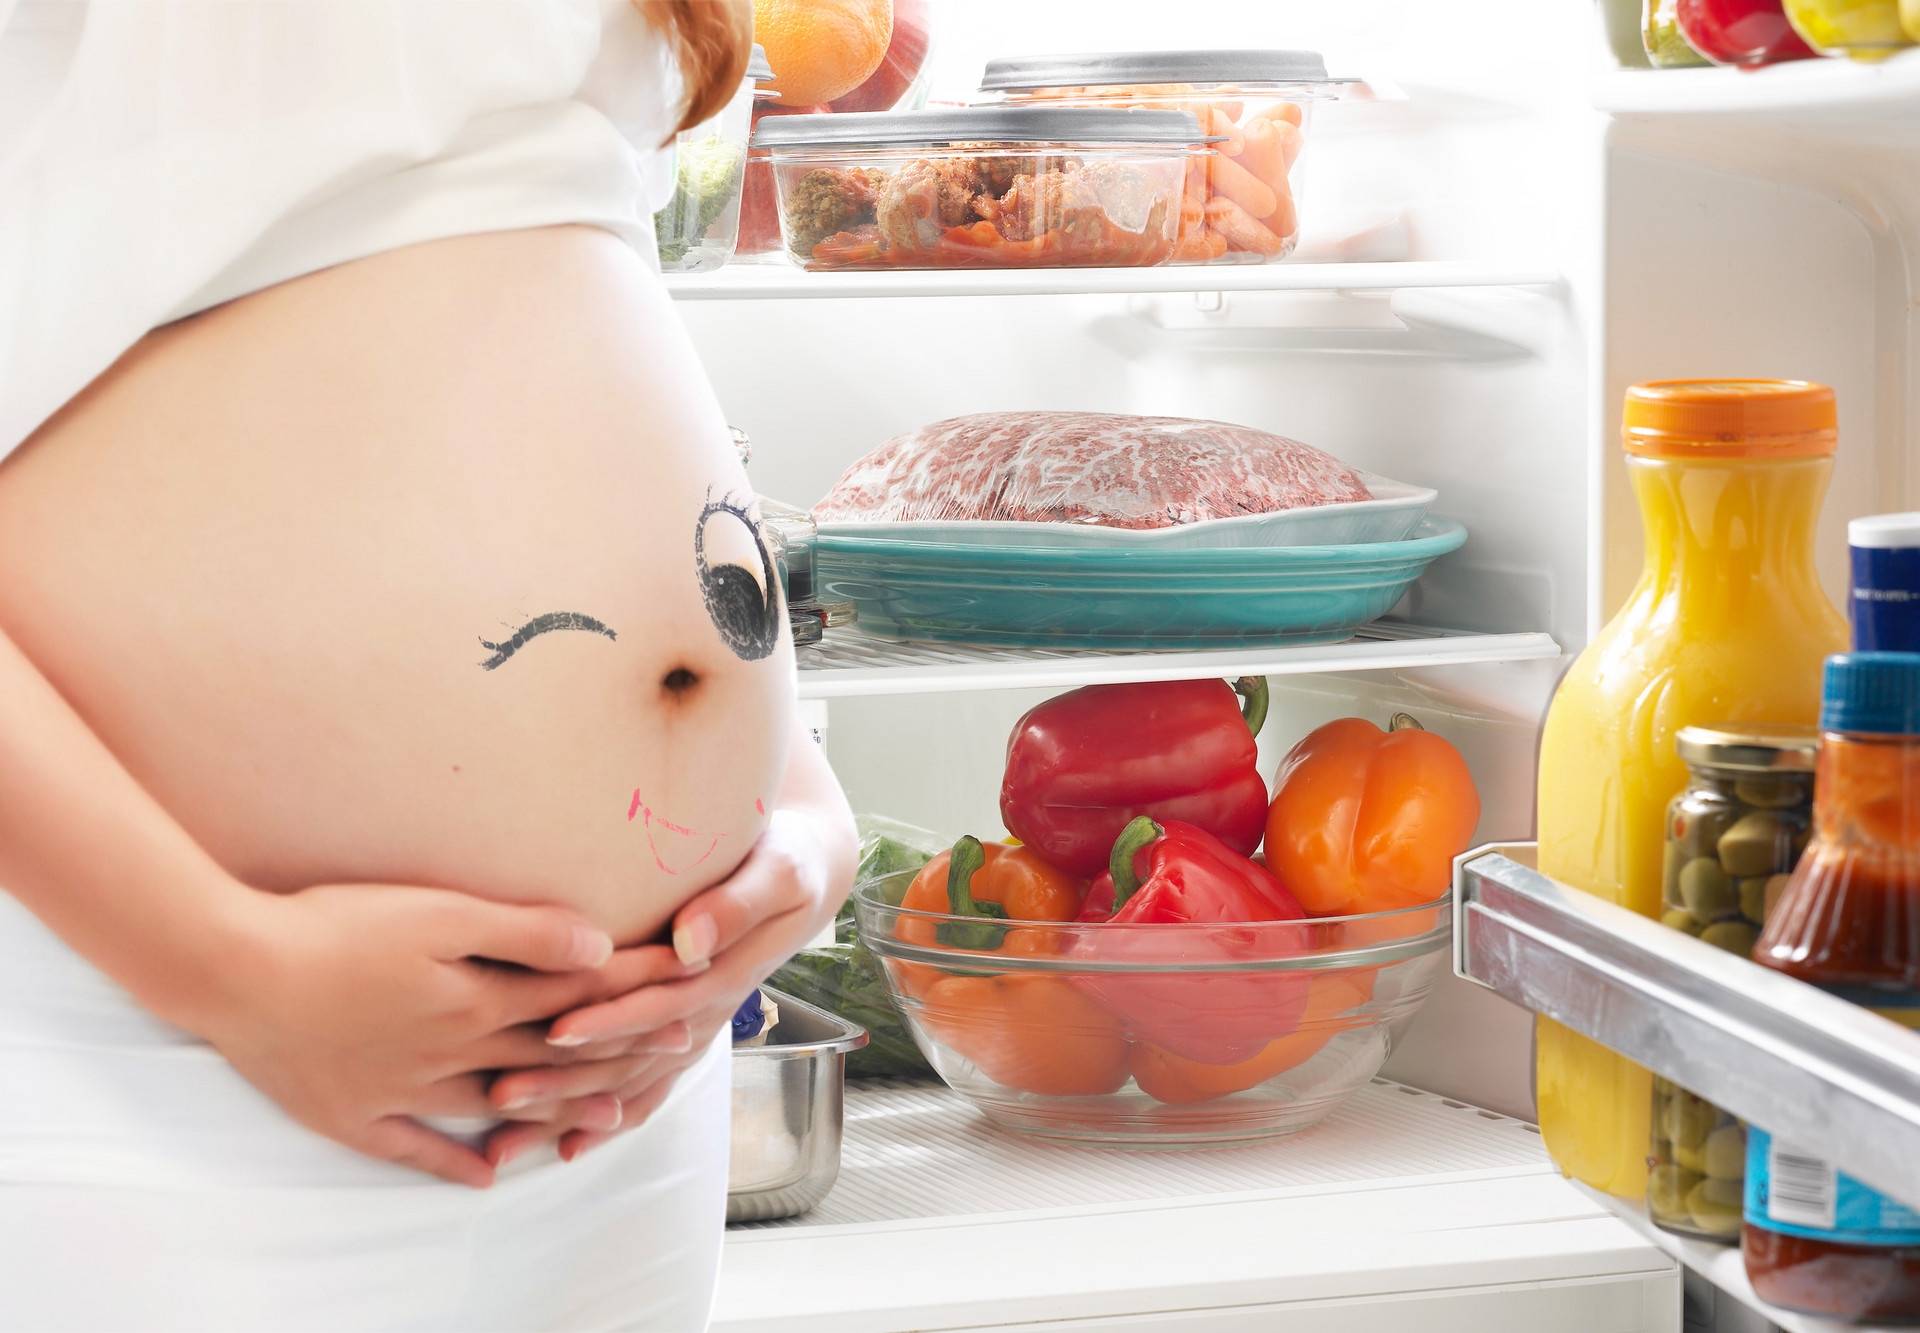 孕妇早餐食谱 - 简单快速做法，让孕妇早餐安全又营养 - 孕小帮